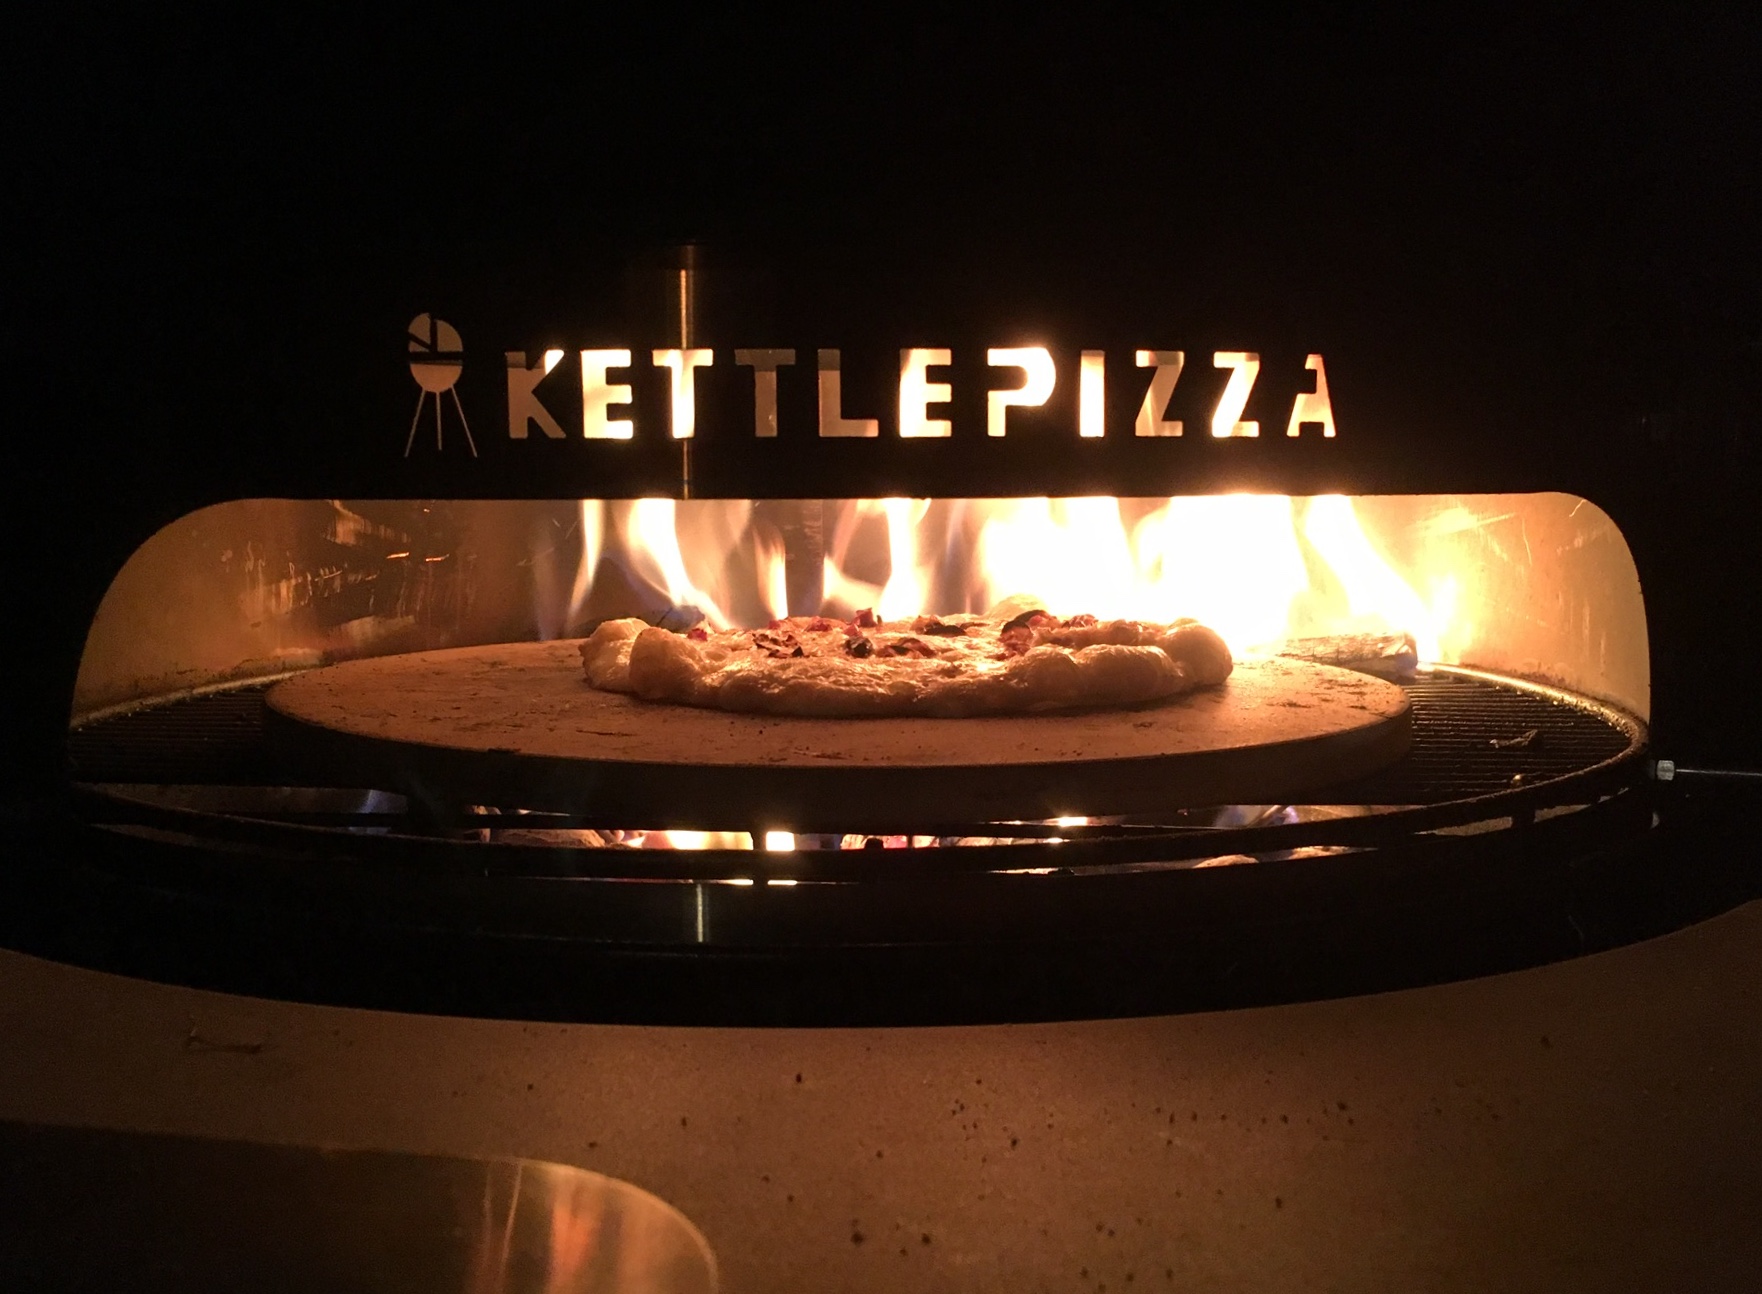 KettlePizza.jpg